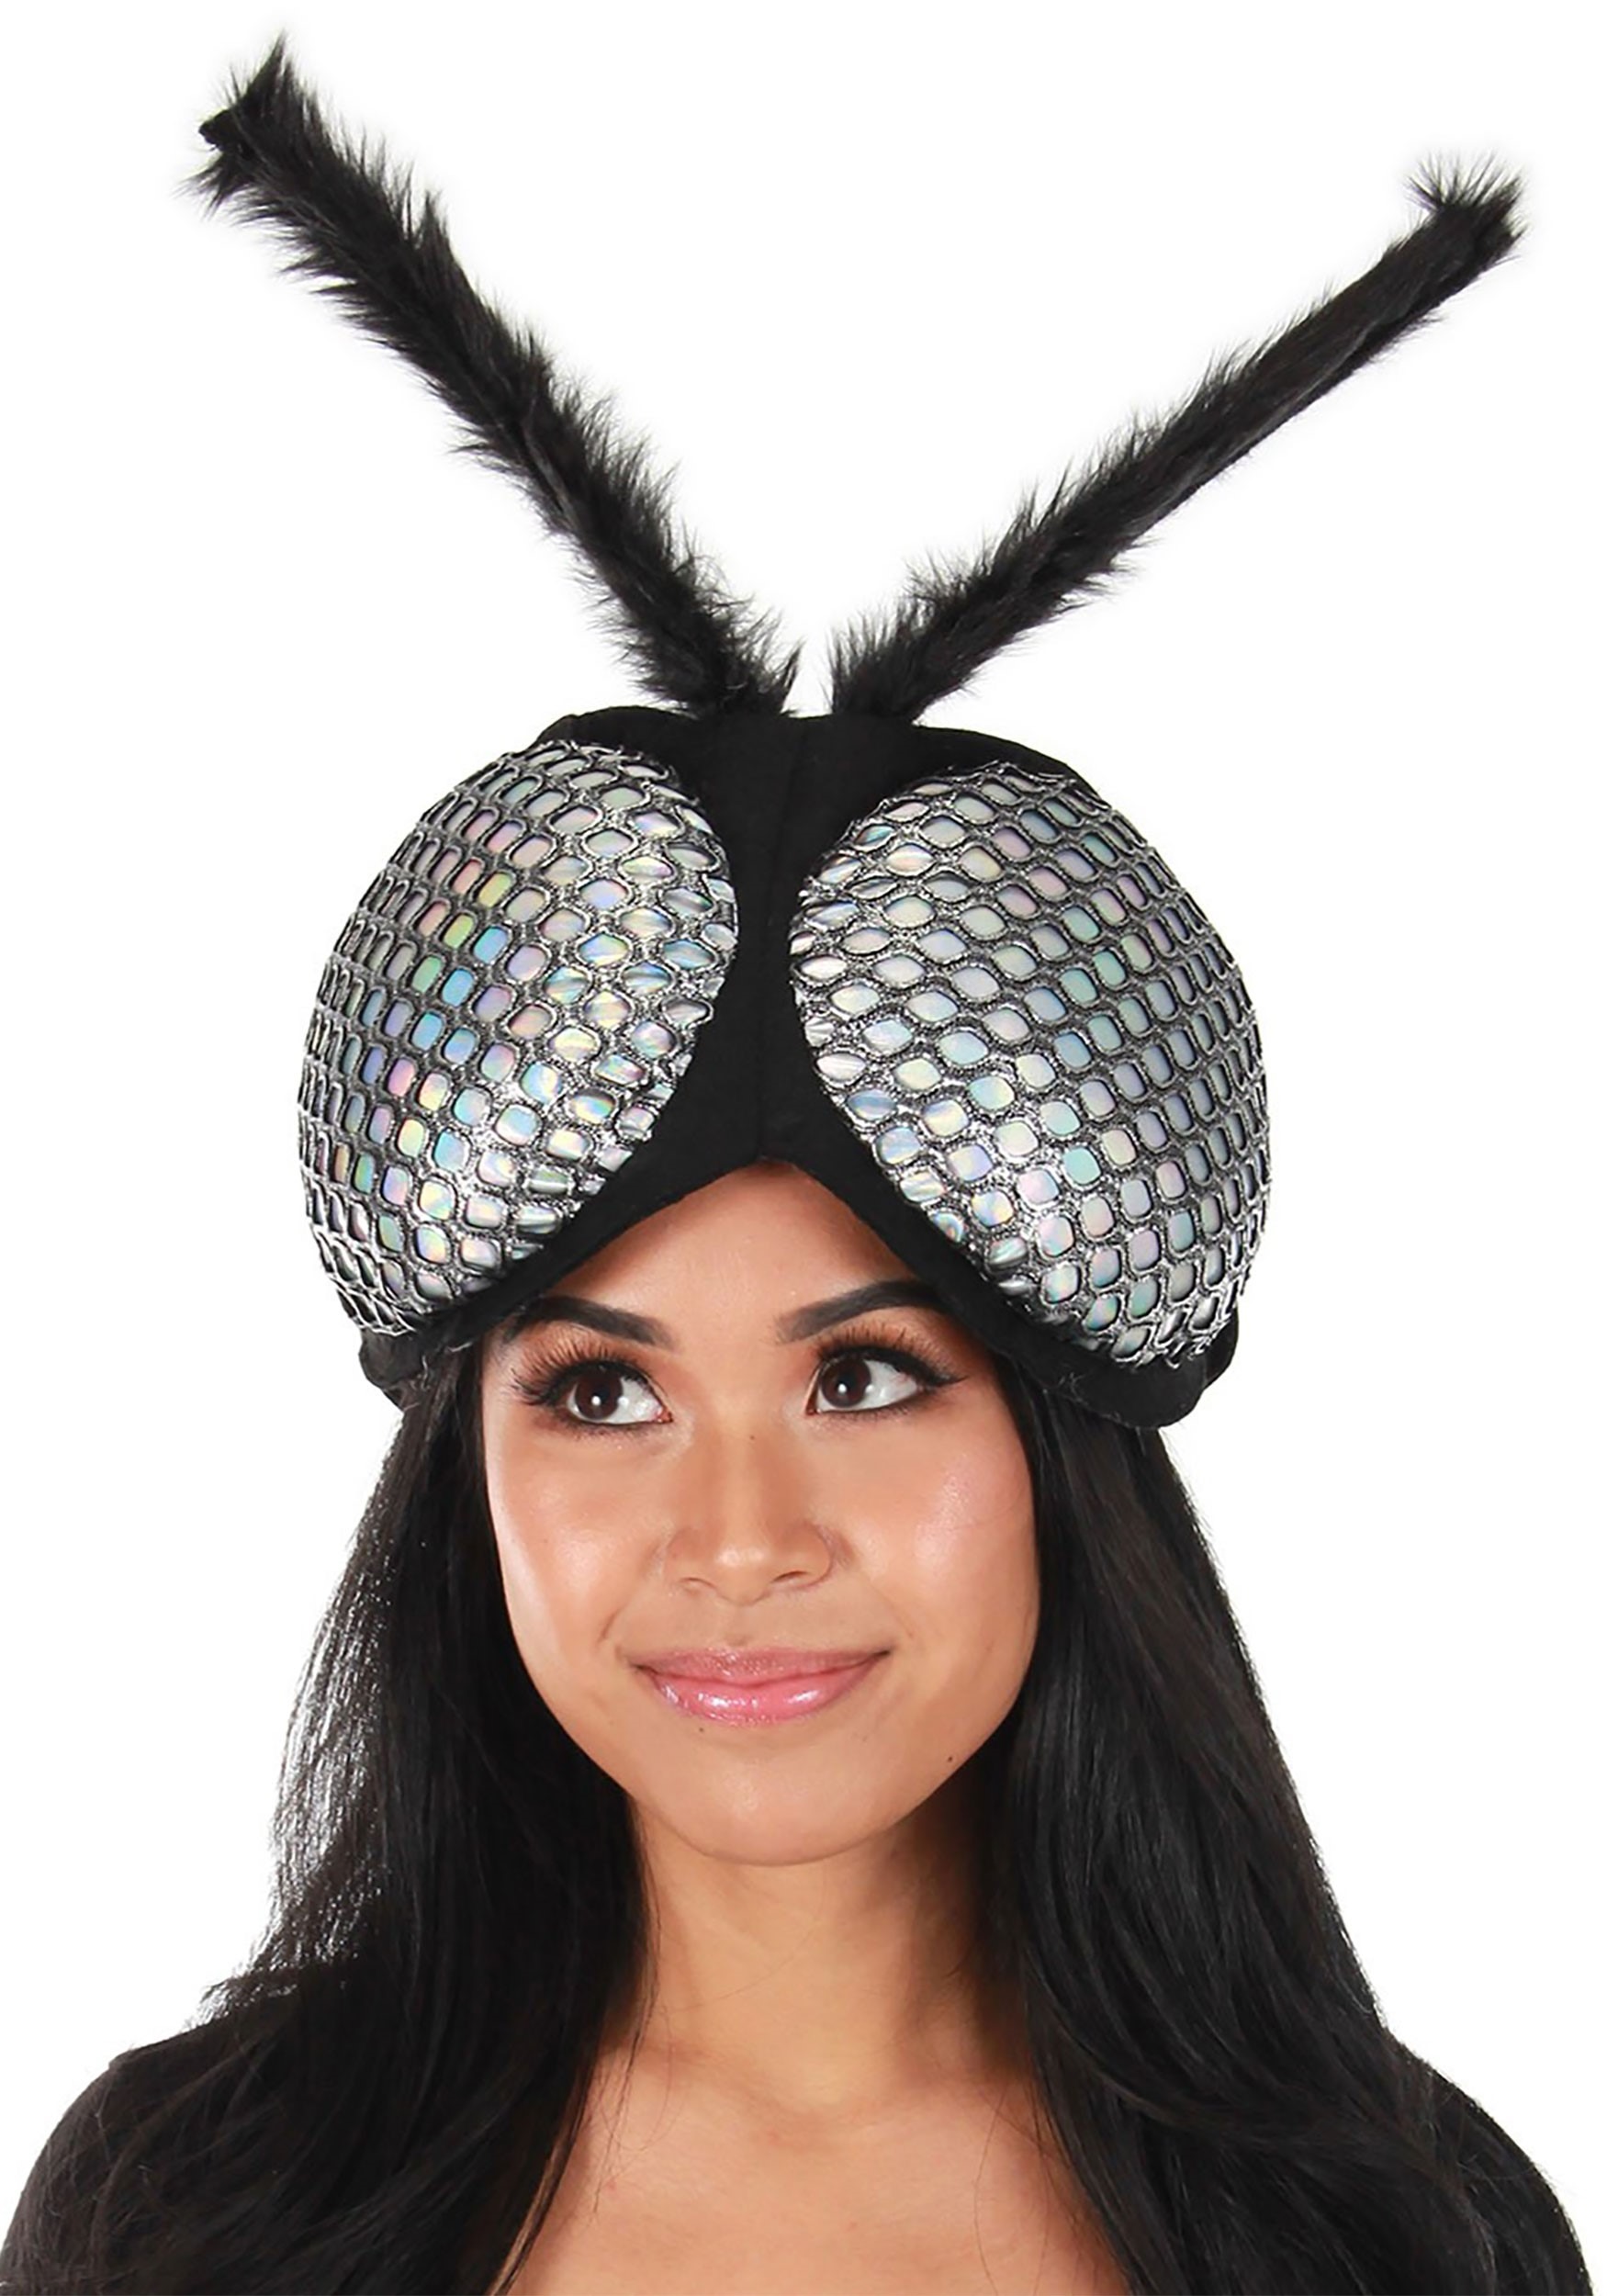 The Holographic Fly Eyes Plush Headband